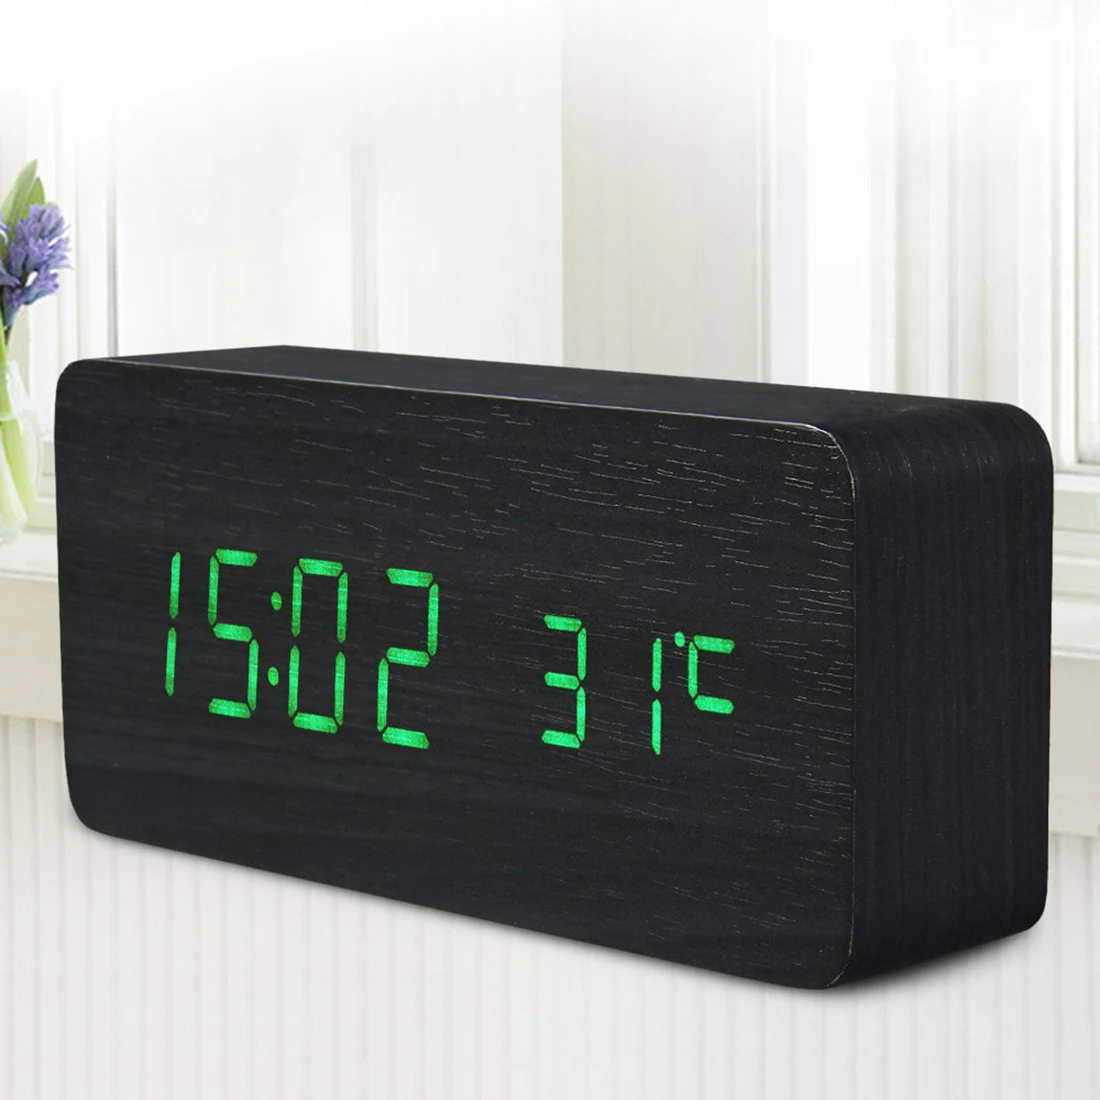 Светодиодный Будильник с деревянной температурой, настольные часы с голосовым управлением, цифровые деревянные часы Despertador, электронные настольные часы, настольный декор